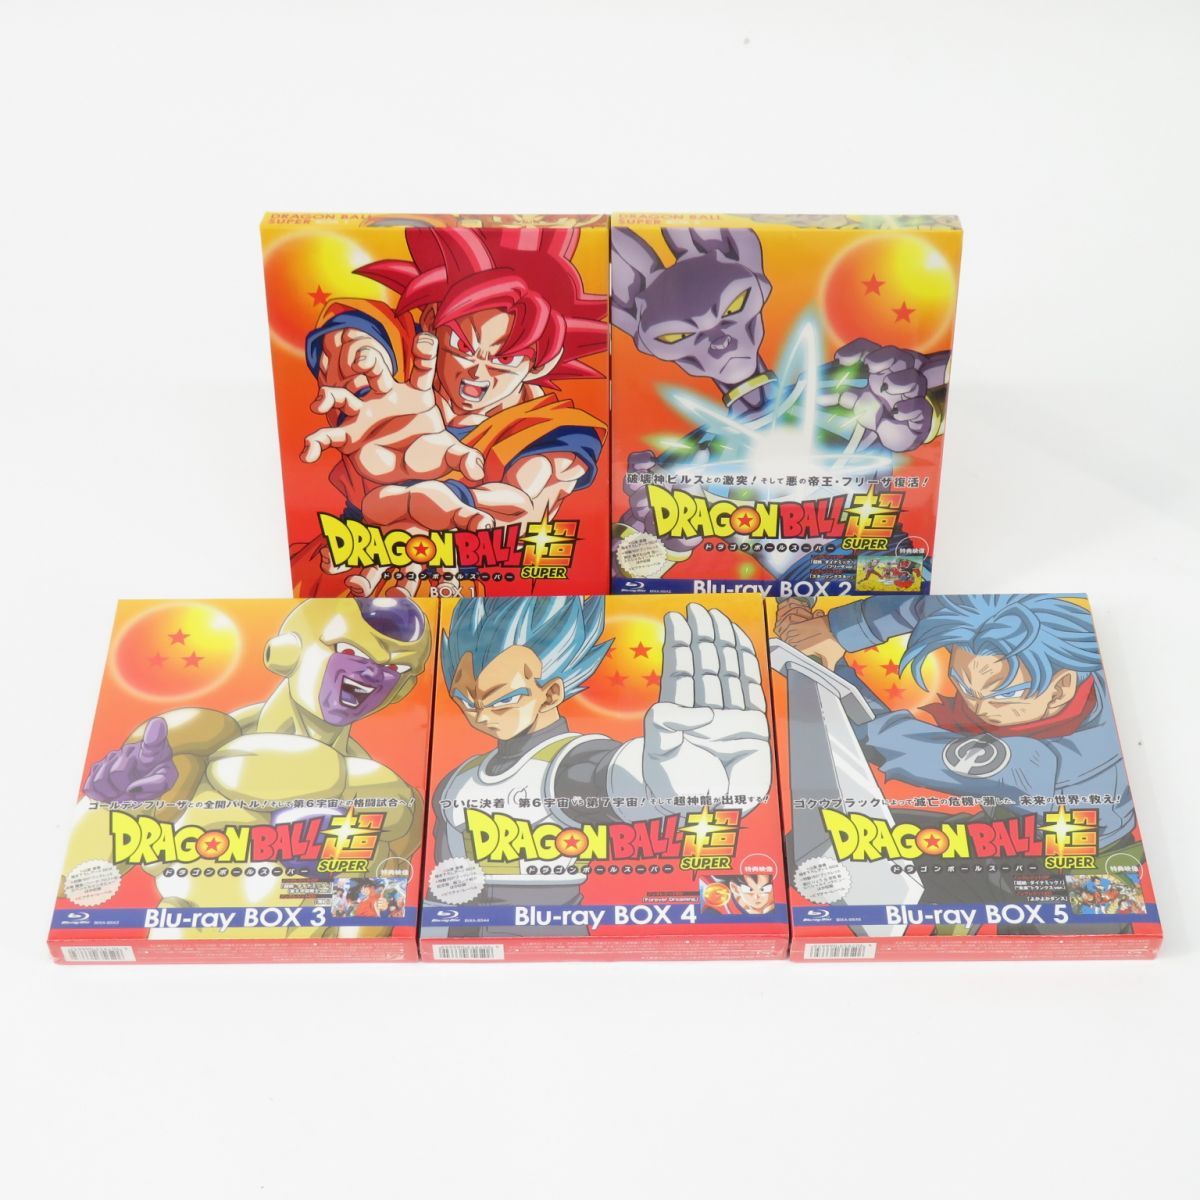 【2〜5:未開封】ドラゴンボール超 ドラゴンボールスーパー Blu-ray BOX 1〜5 セット ※1のみ中古